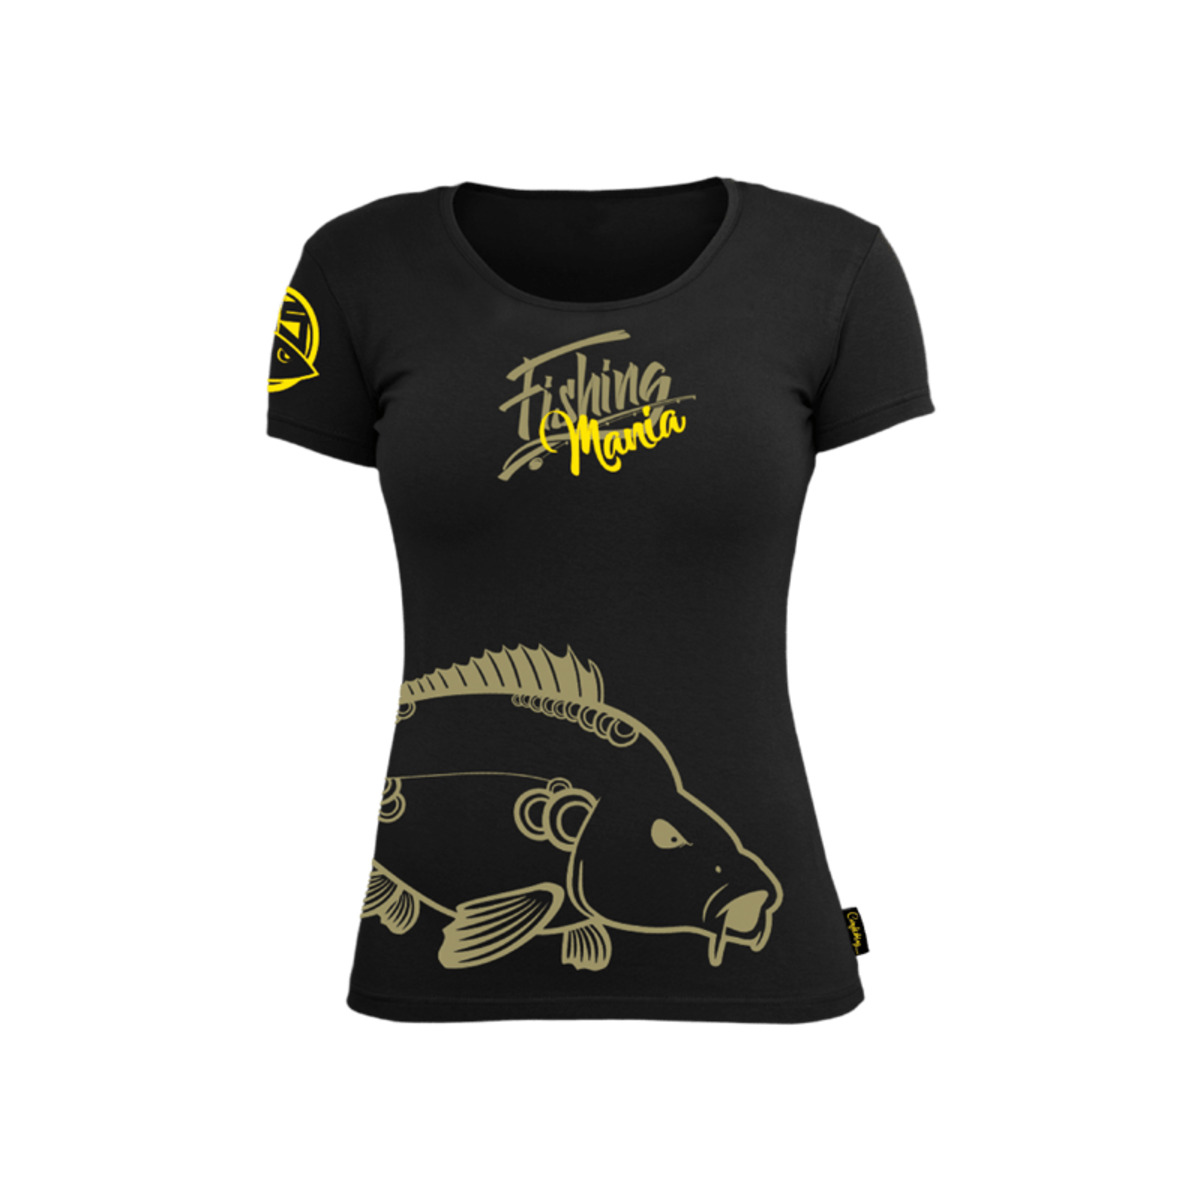 Hotspot Design T-shirt Woman Fishing Mania Carpfishing - S